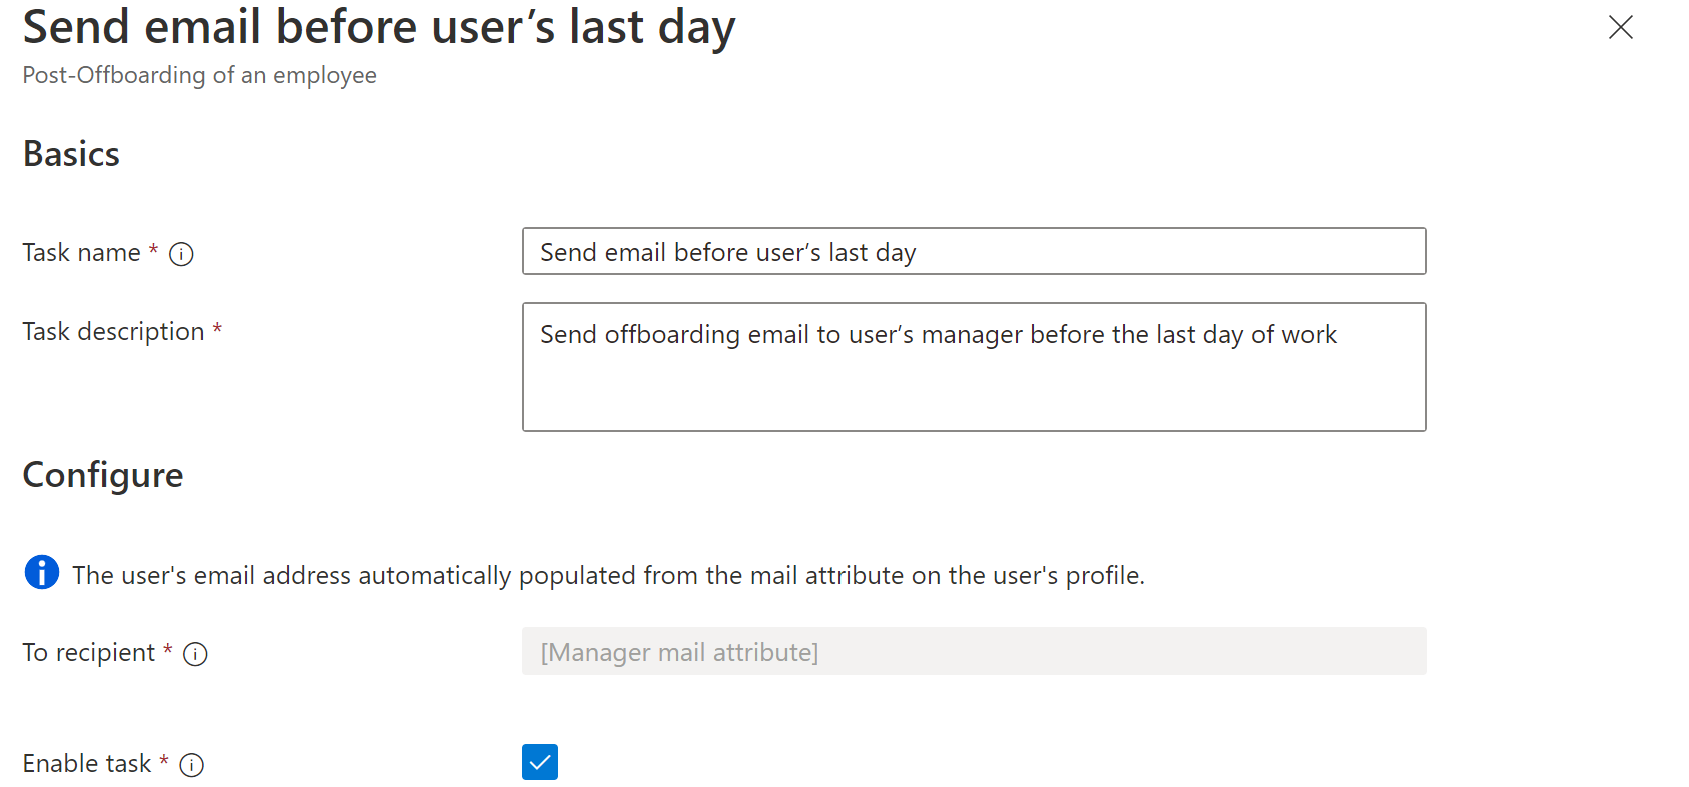 工作流程工作的螢幕快照：在用戶最後一天工作之前傳送電子郵件。